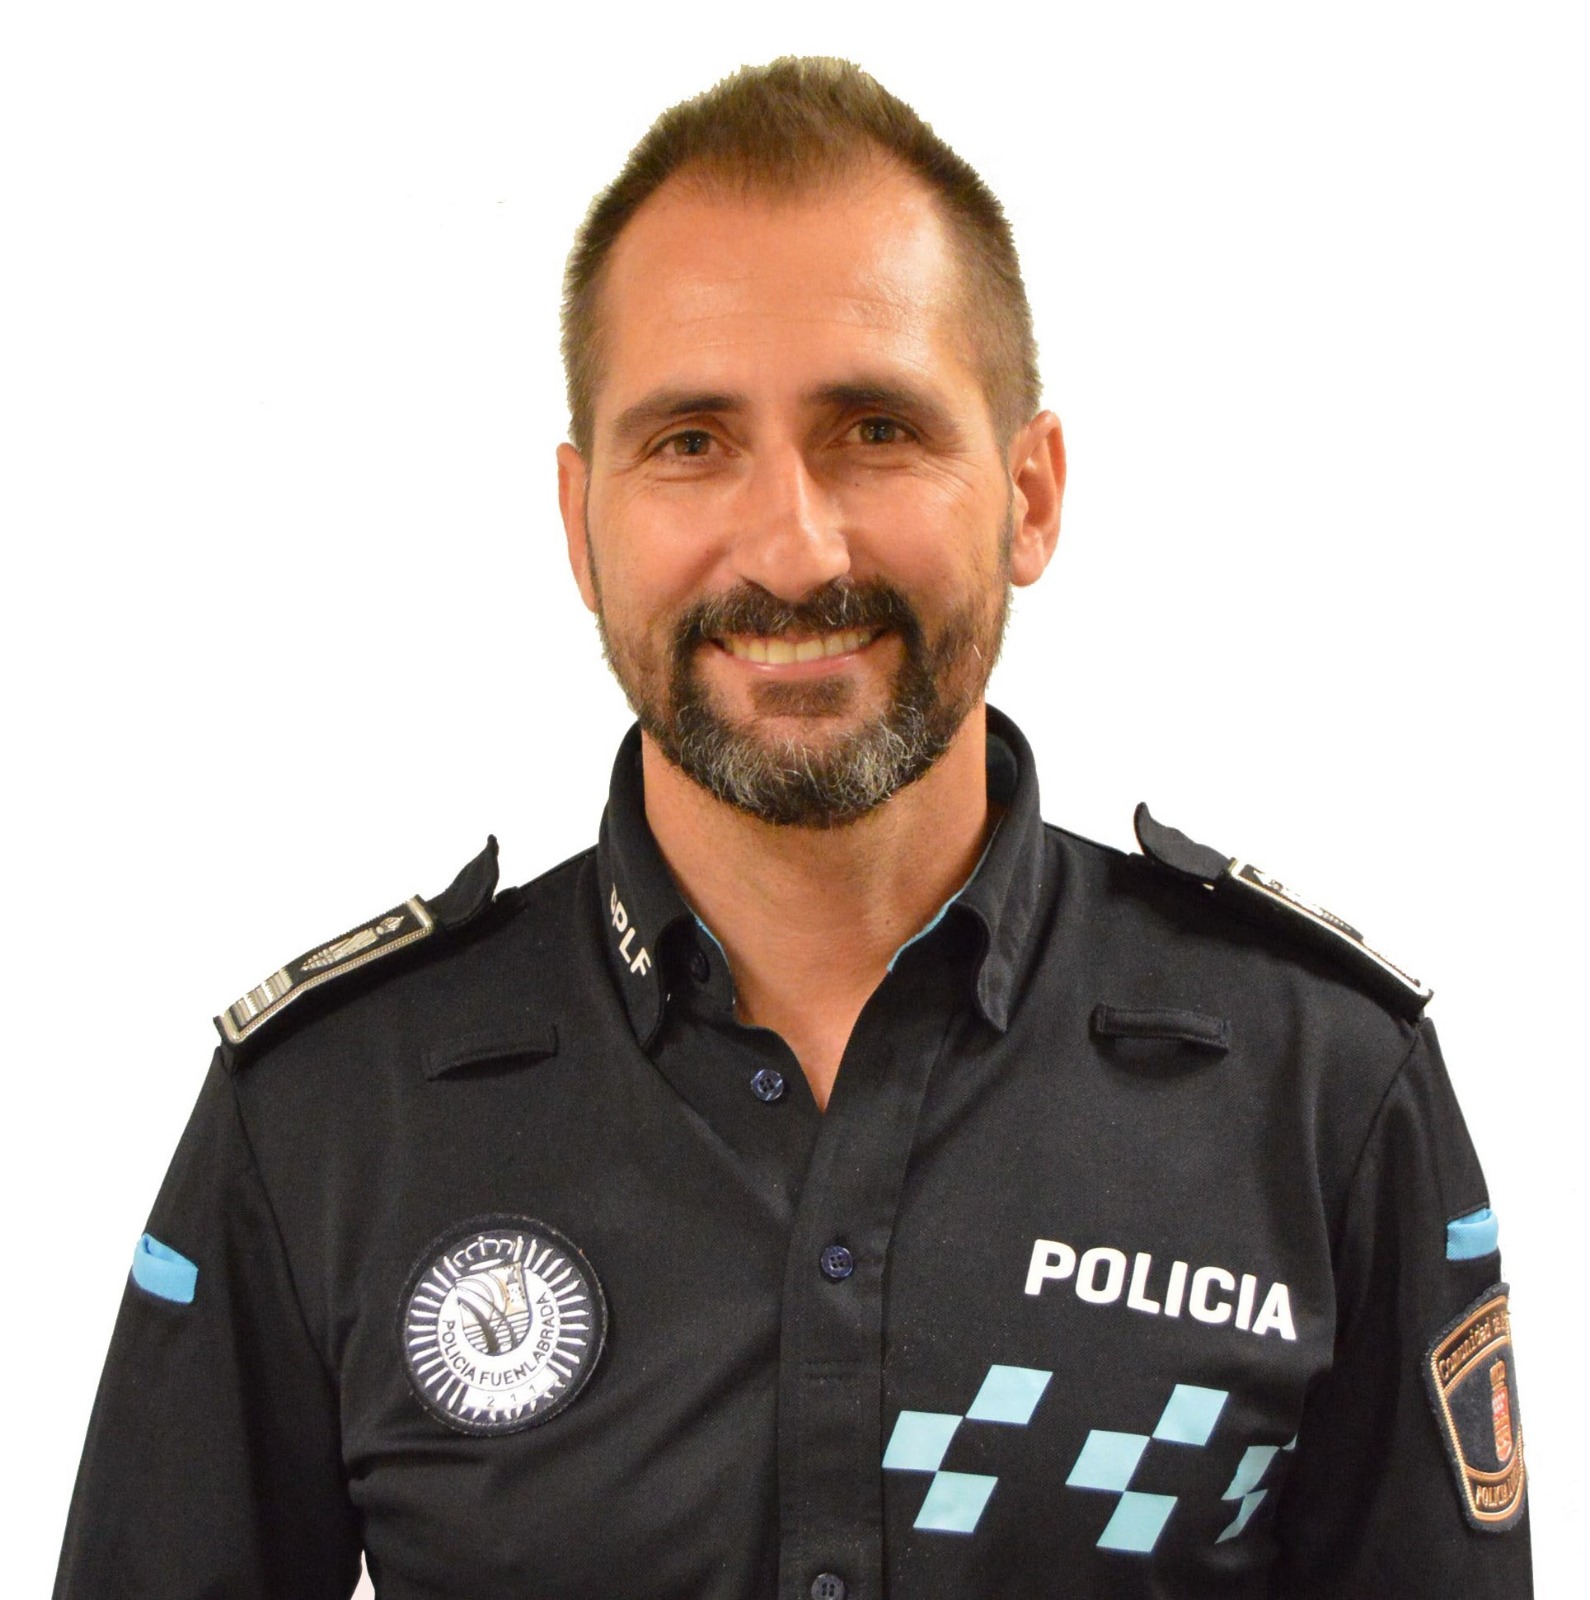 David MARTÍN ABÁNADES, Inspecteur de la Police locale, service de police de Fuenlabrada, Espagne